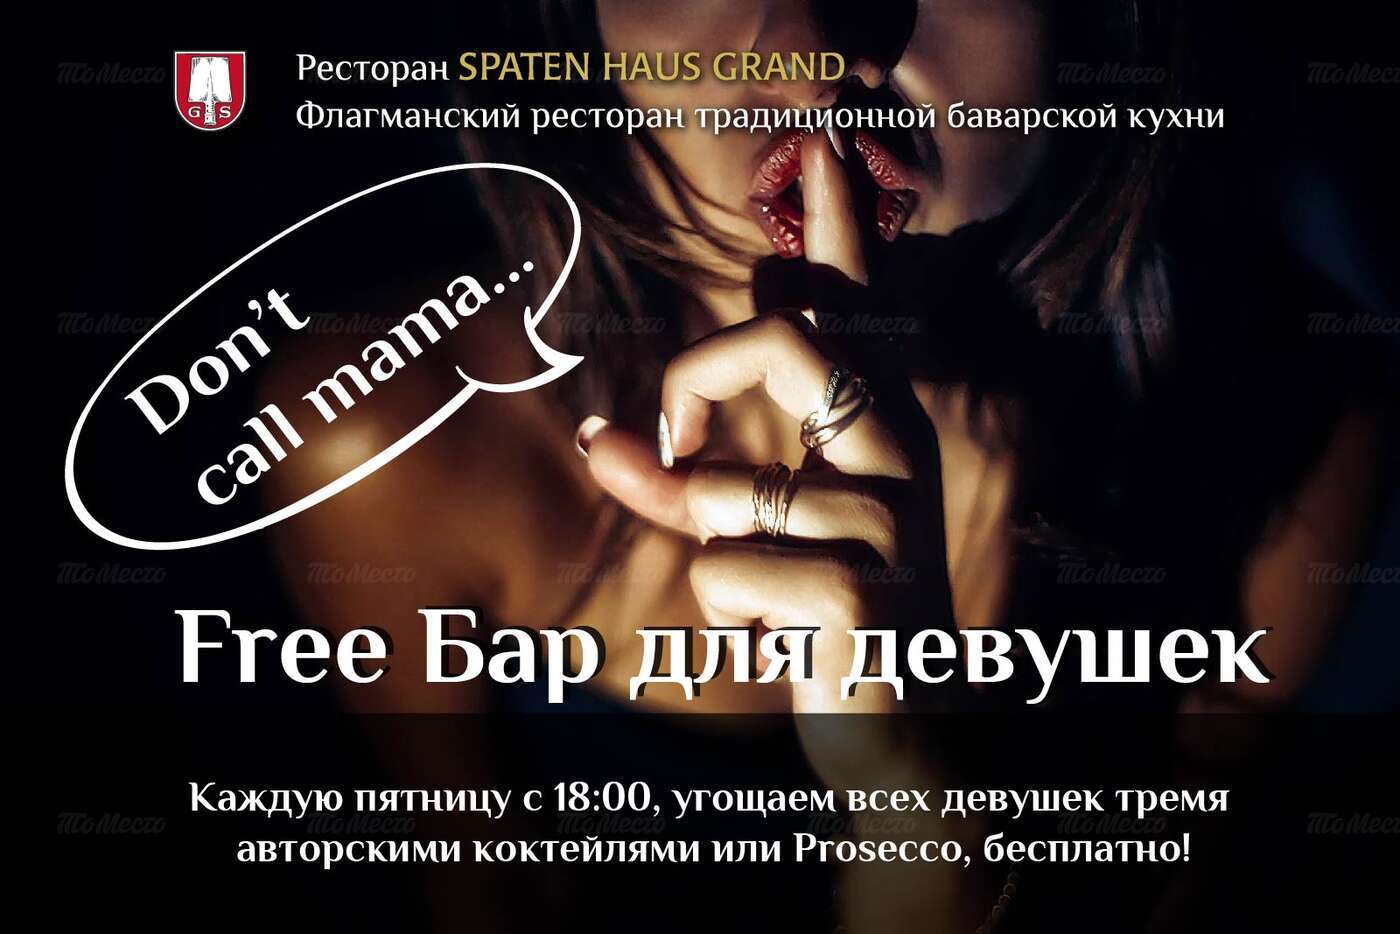 Free Бар для девушек! 3 авторских коктейля или Prosecco бесплатно